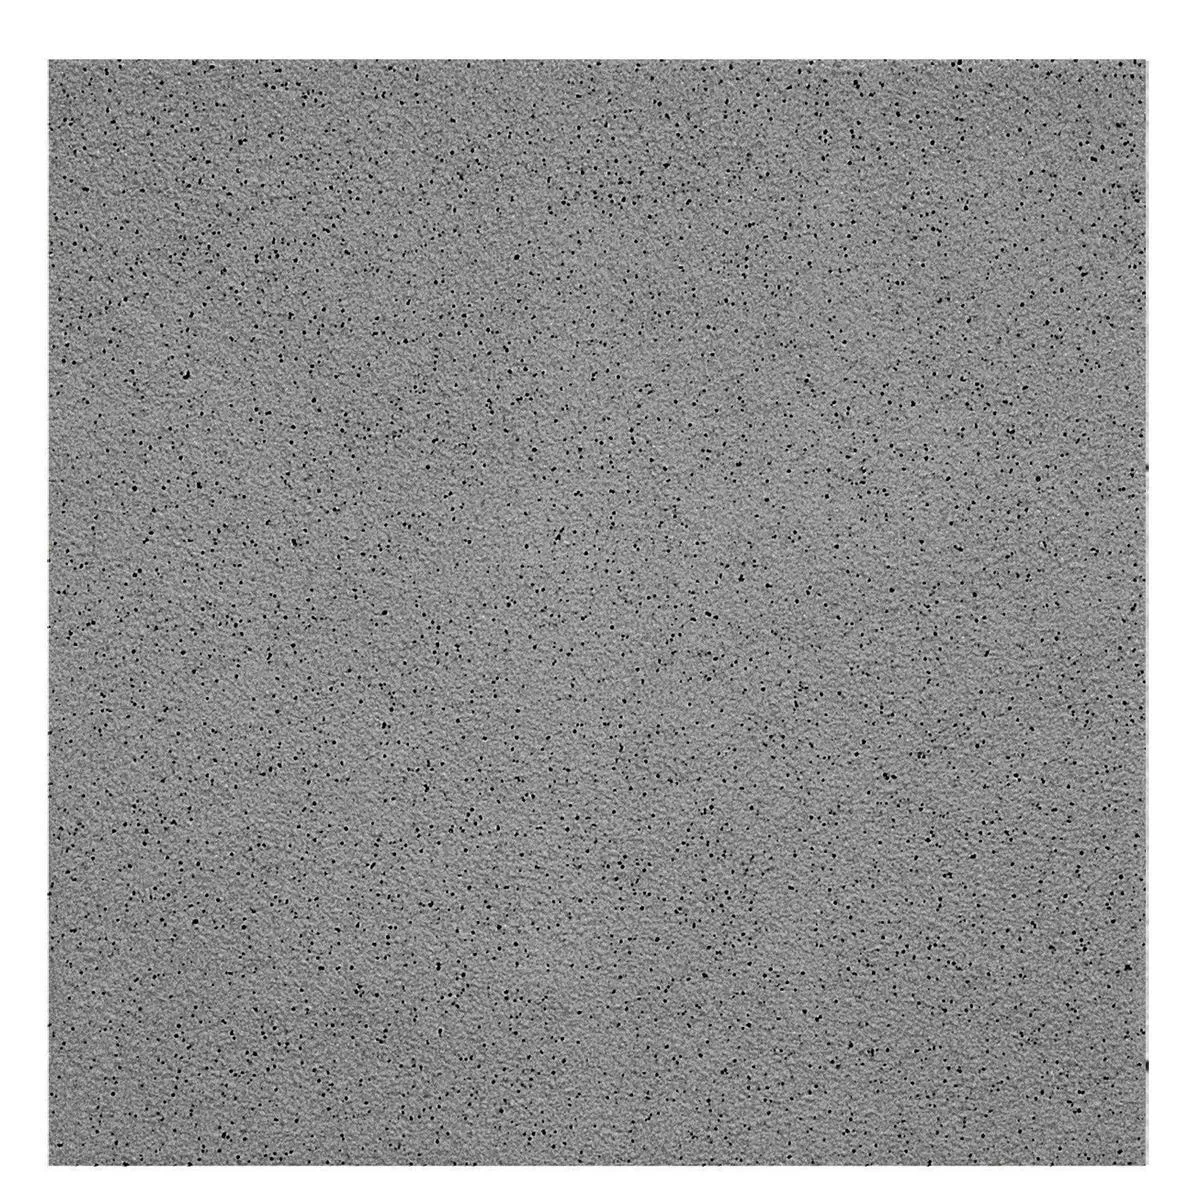 Vzorek Podlahová Dlaždice Jemnozrnný R11/B Antracitová 15x15cm